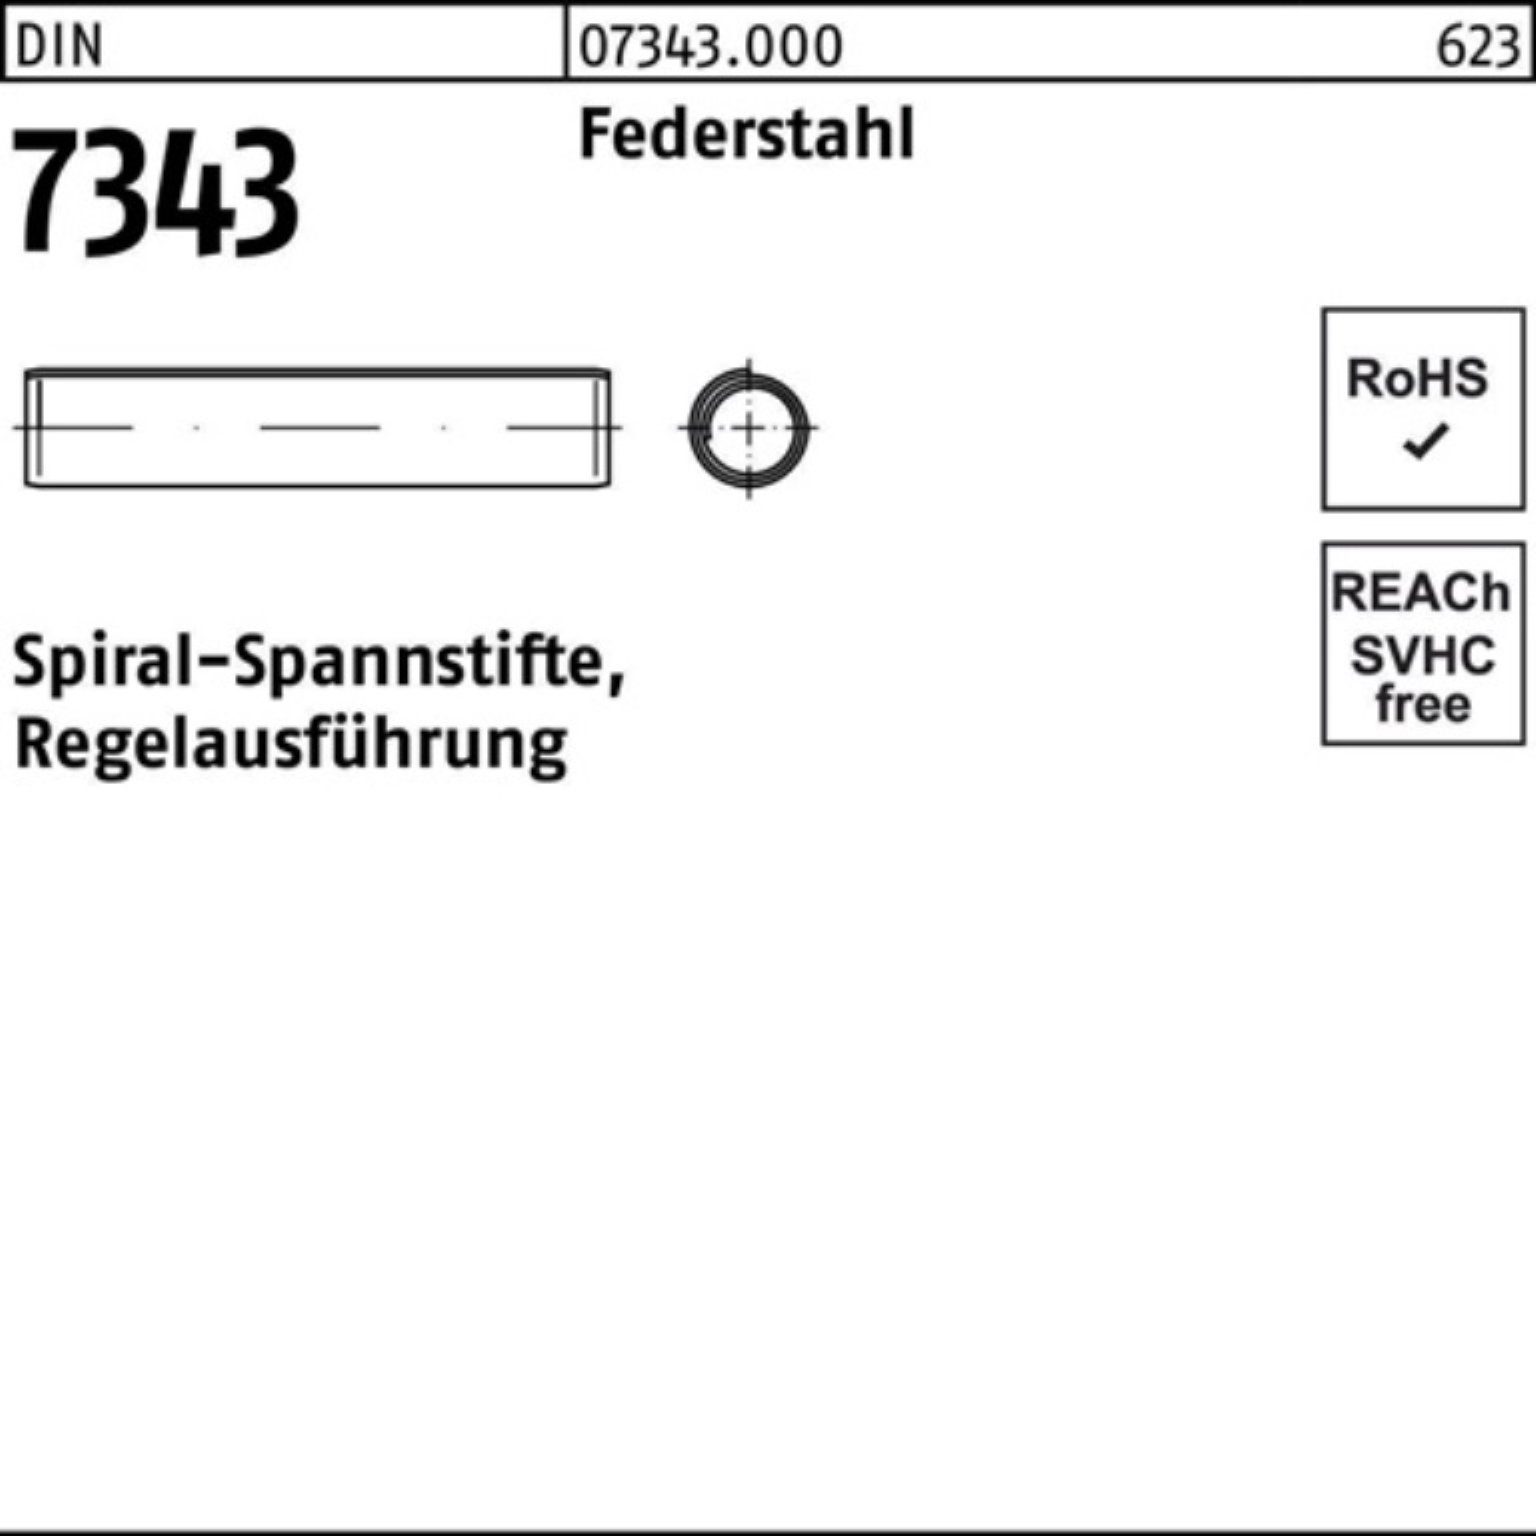 Reyher Spannstift 200er 7343/ISO Regela 60 Federstahl DIN Pack Spiralspannstift 10x 8750